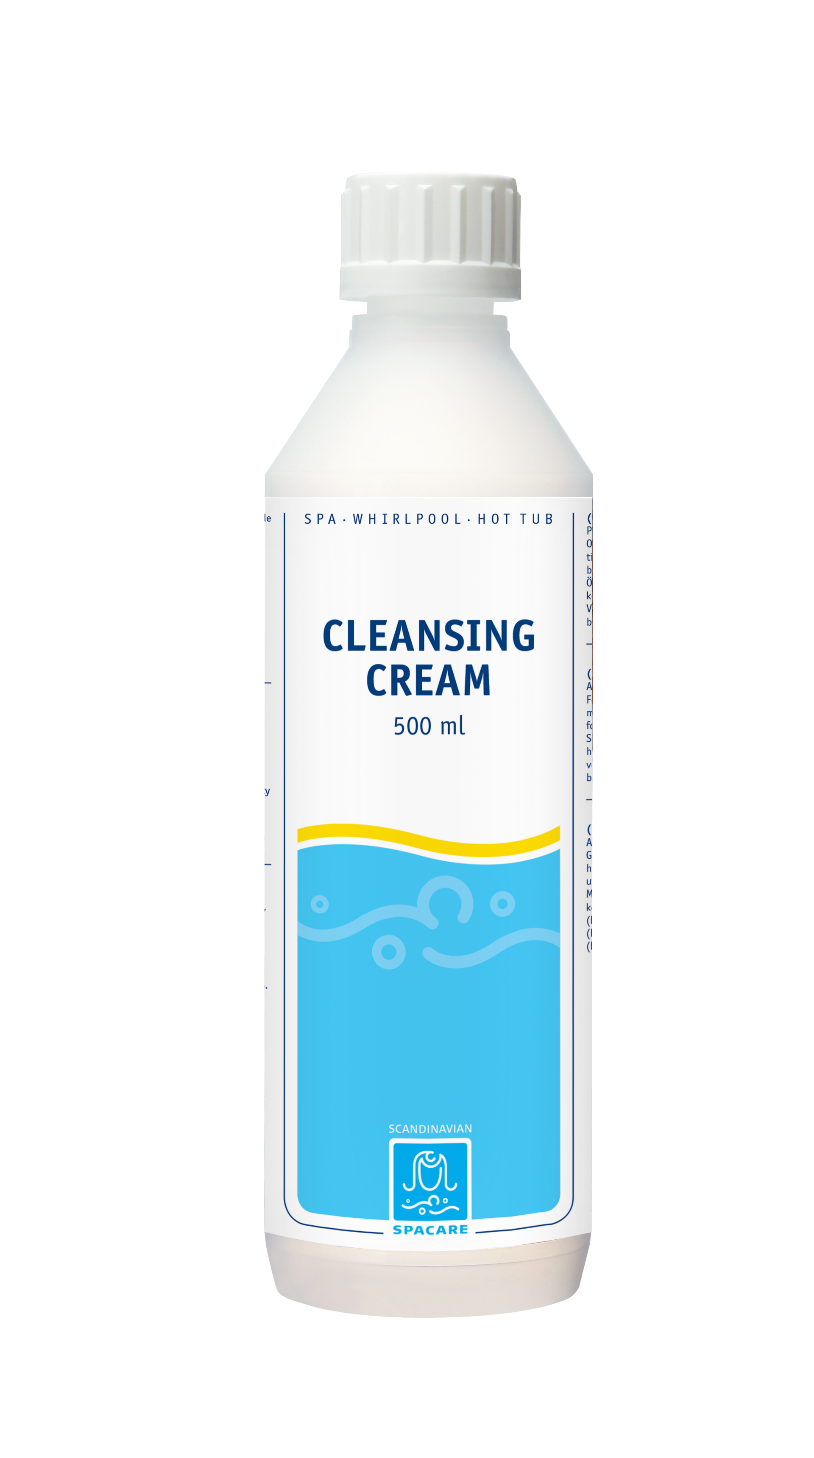 Cleansing Cream (SpaCare)